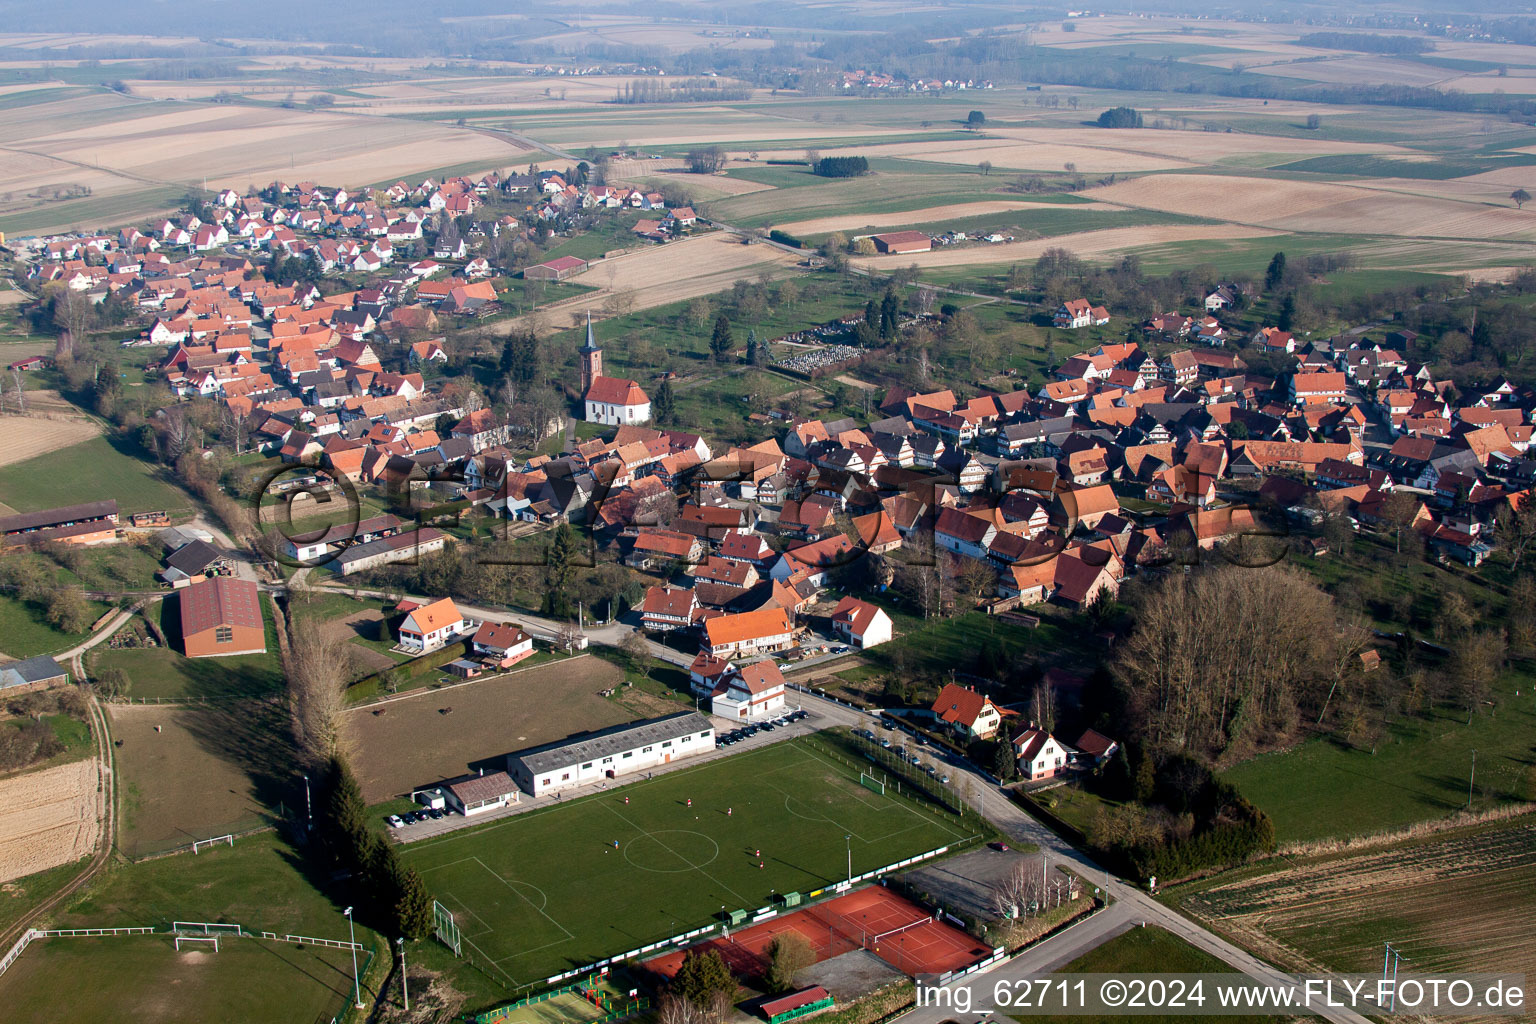 Sportplatz- Fussballplatz am Rand von Hunspach in Grand Est im Bundesland Bas-Rhin, Frankreich